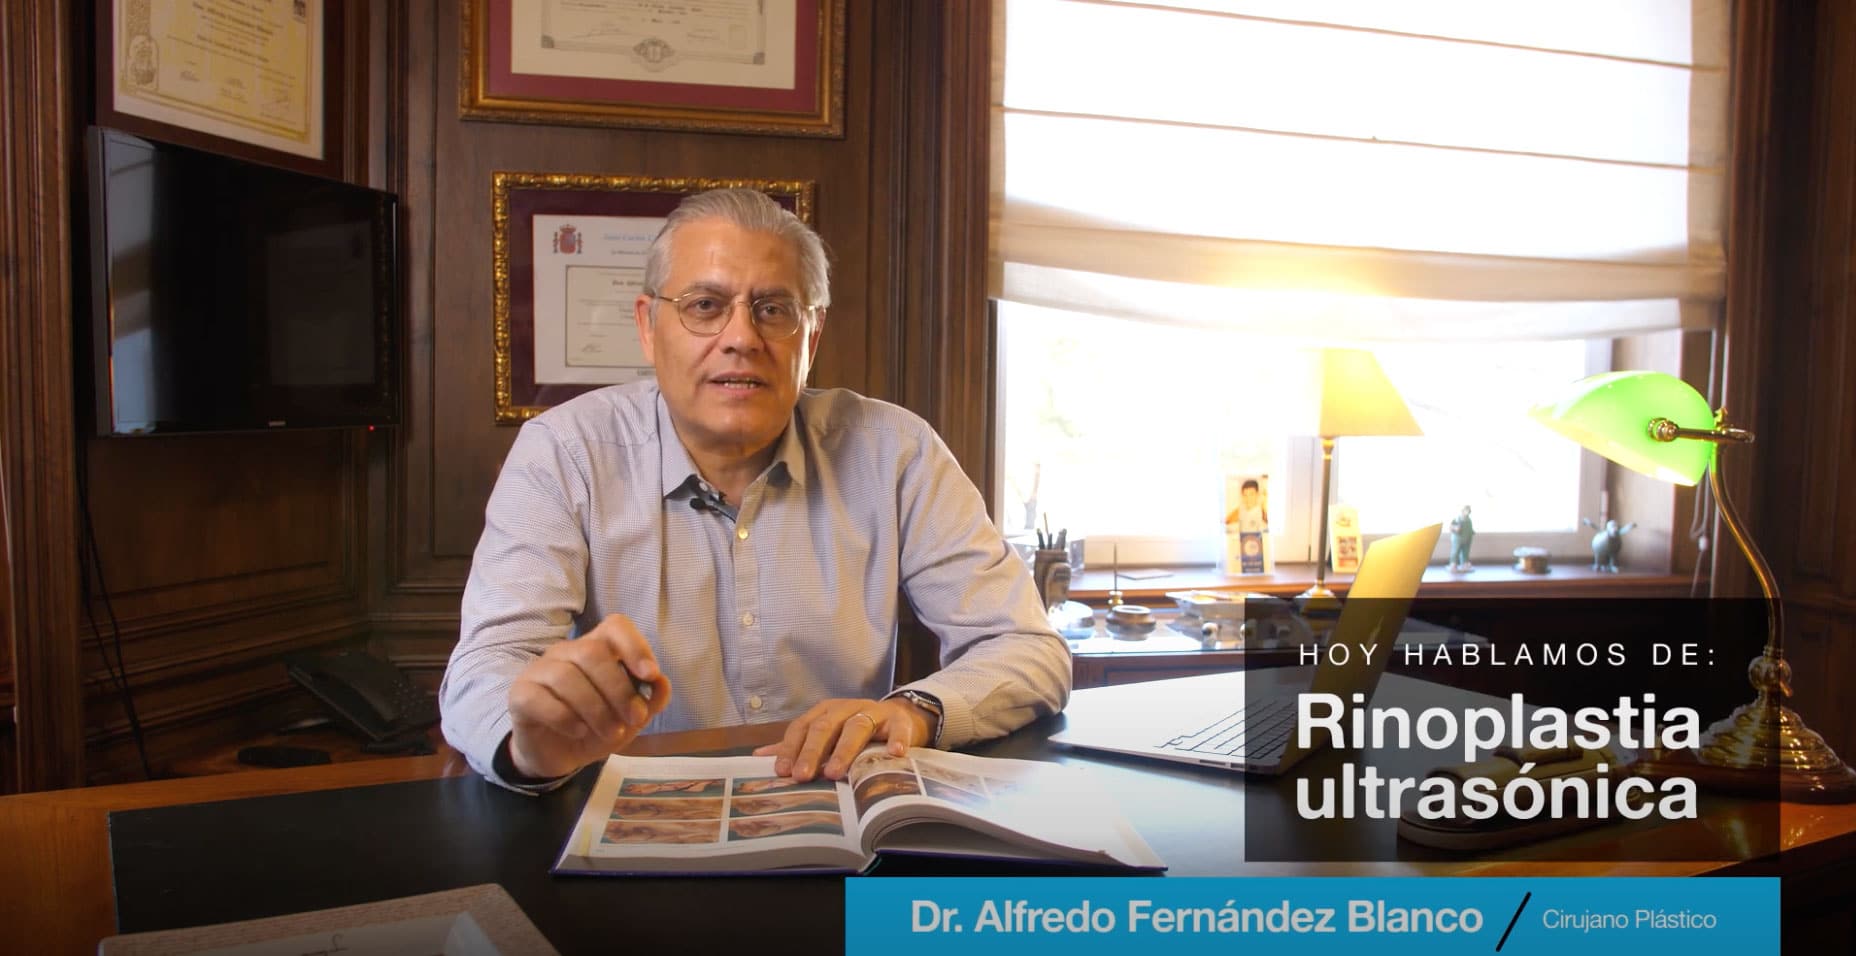 Videoblog acerca de la rinoplastia ultrasónica por el Dr. Fernández Blanco